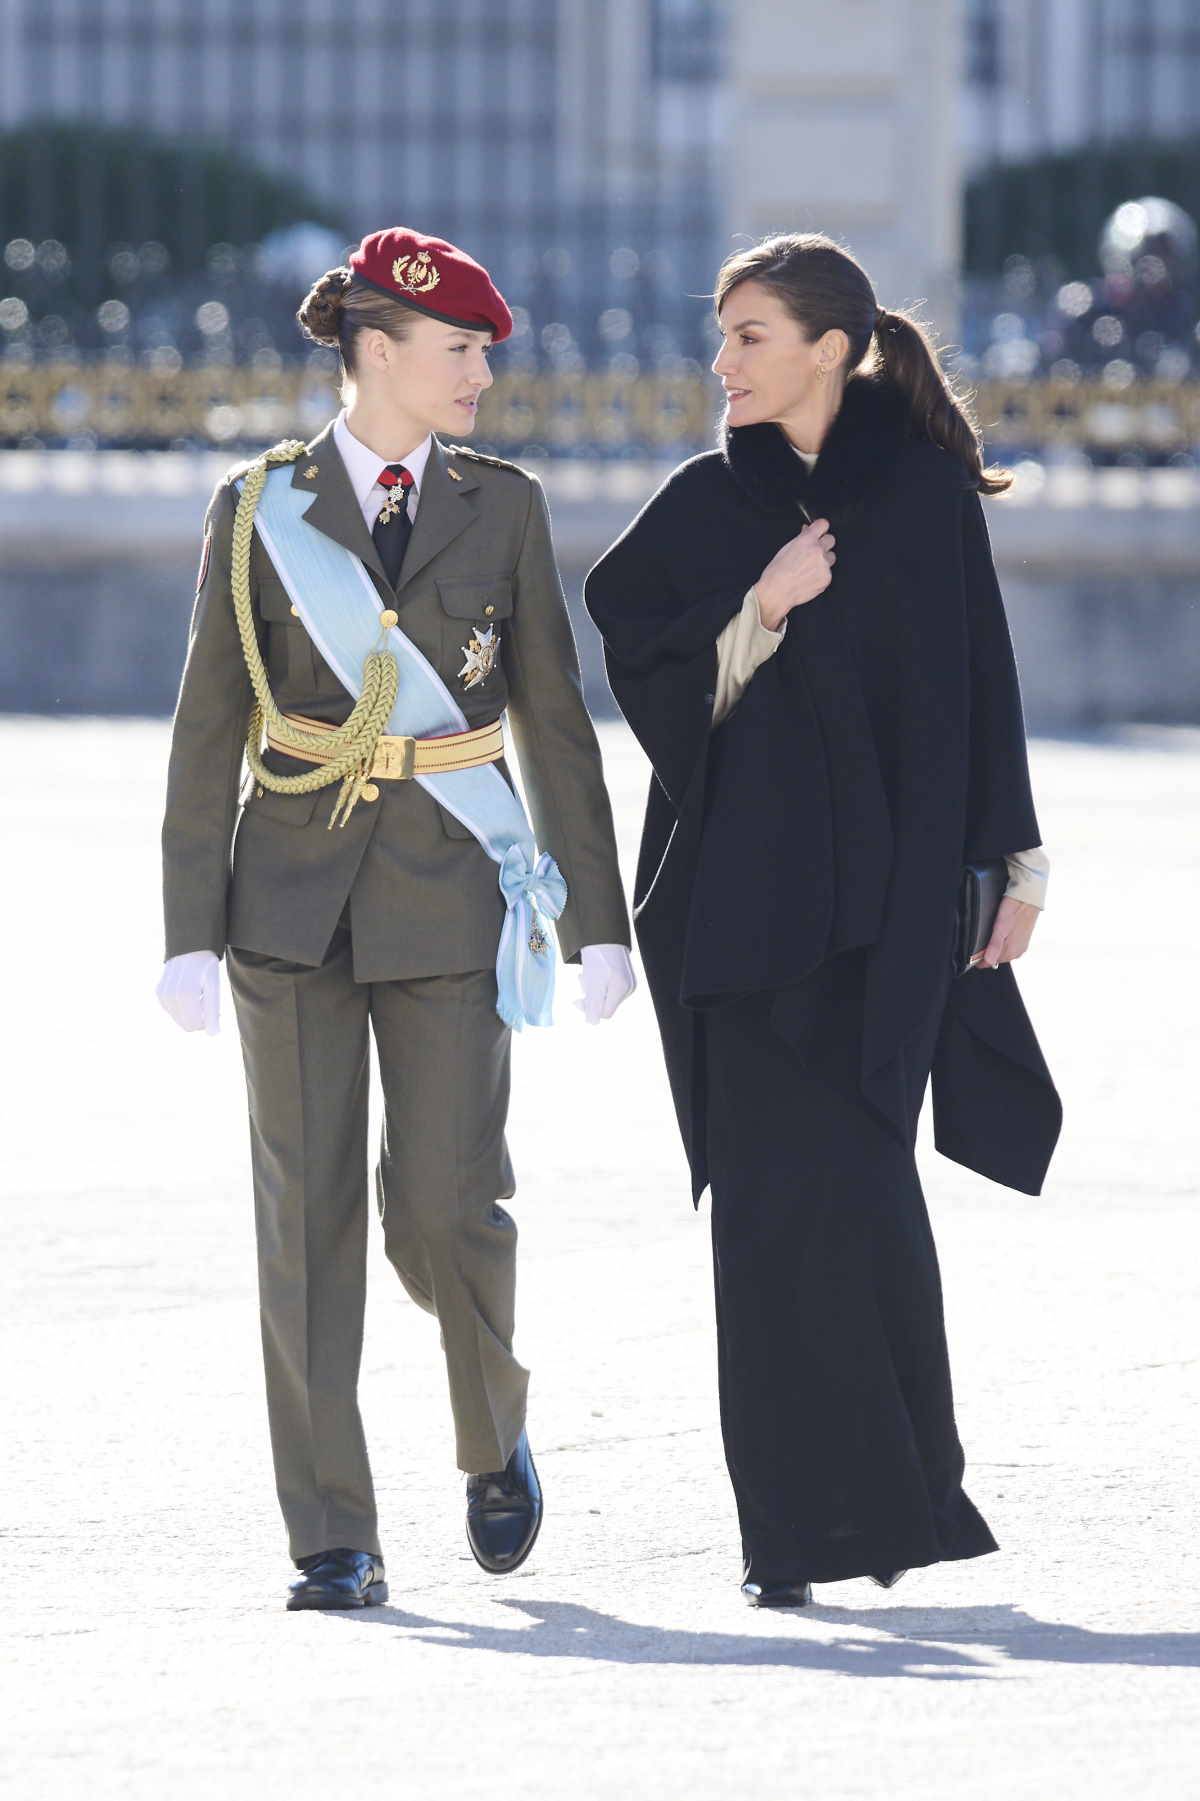 Królowa Letycja towarzyszy księżniczce Eleonorze podczas wojskowej ceremonii (Fot. Getty Images)